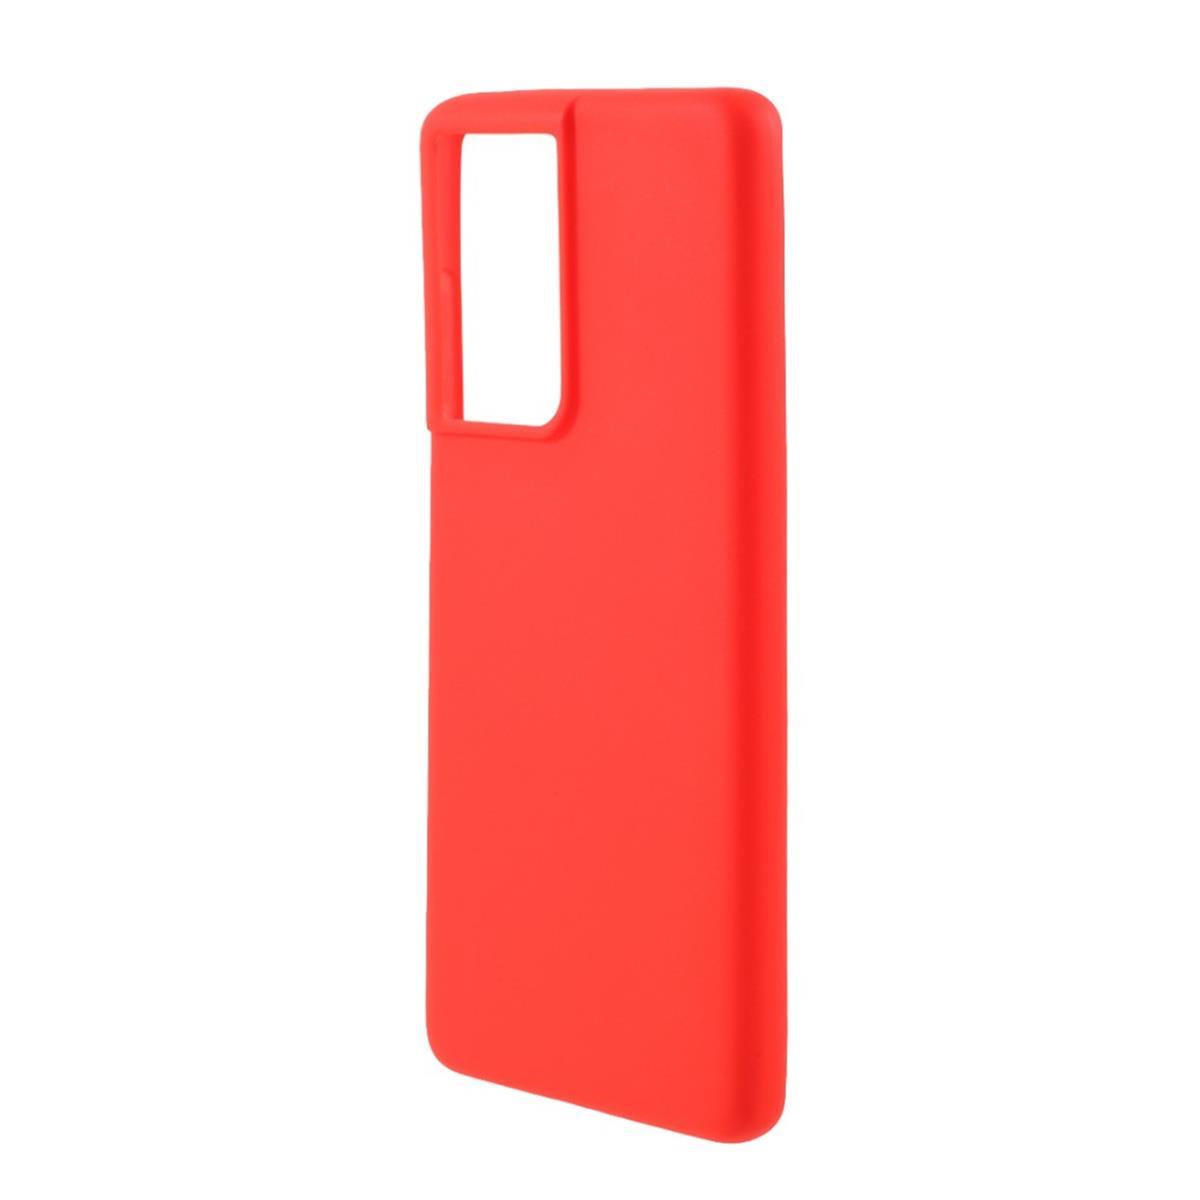 Hülle für Samsung Galaxy S21 Ultra 5G Handyhülle Silikon Case Cover Schutzhülle Matt Rot